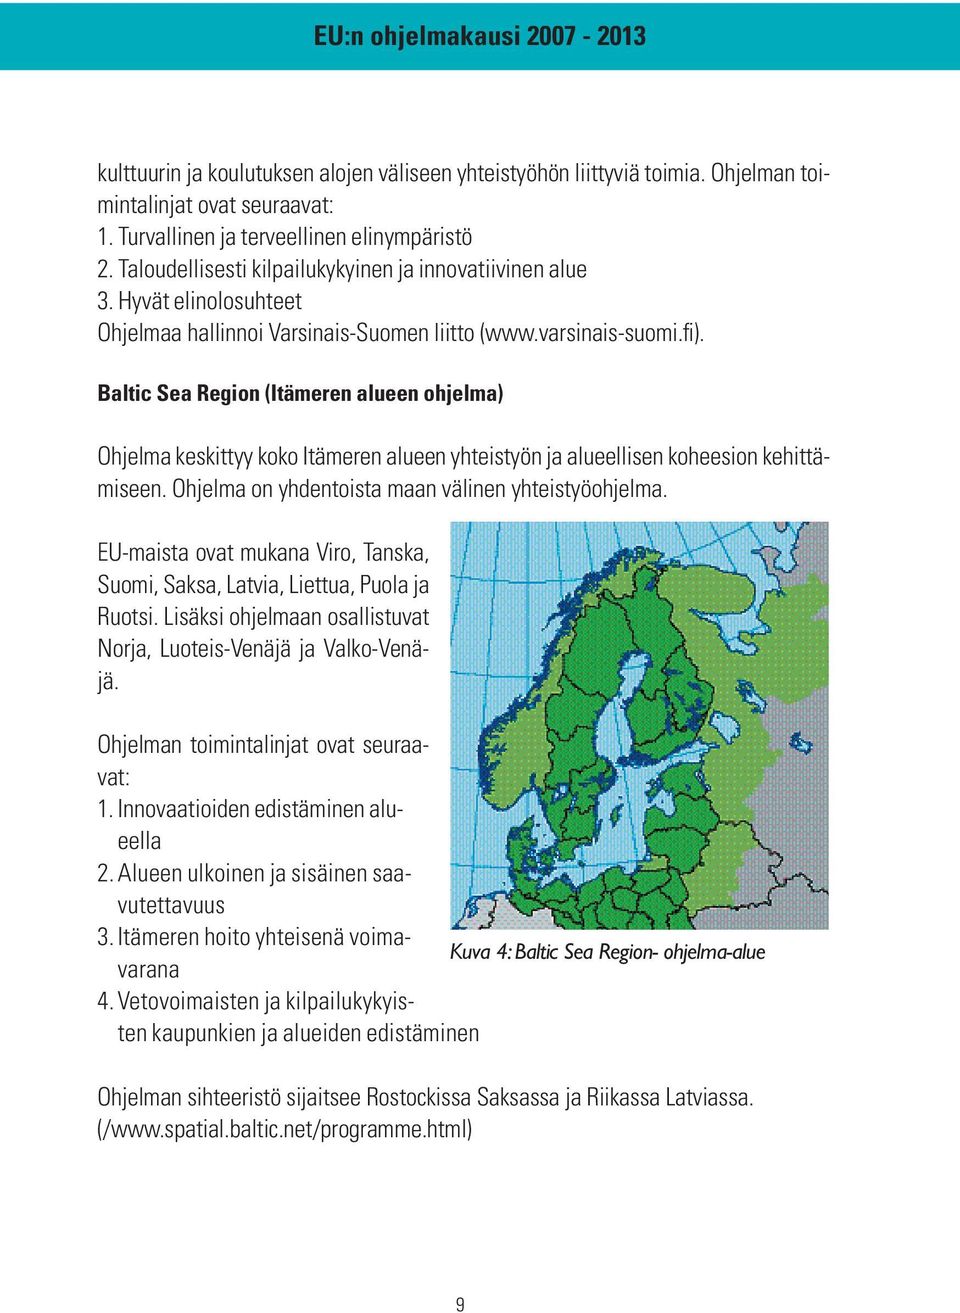 Baltic Sea Region (Itämeren alueen ohjelma) Ohjelma keskittyy koko Itämeren alueen yhteistyön ja alueellisen koheesion kehittämiseen. Ohjelma on yhdentoista maan välinen yhteistyöohjelma.